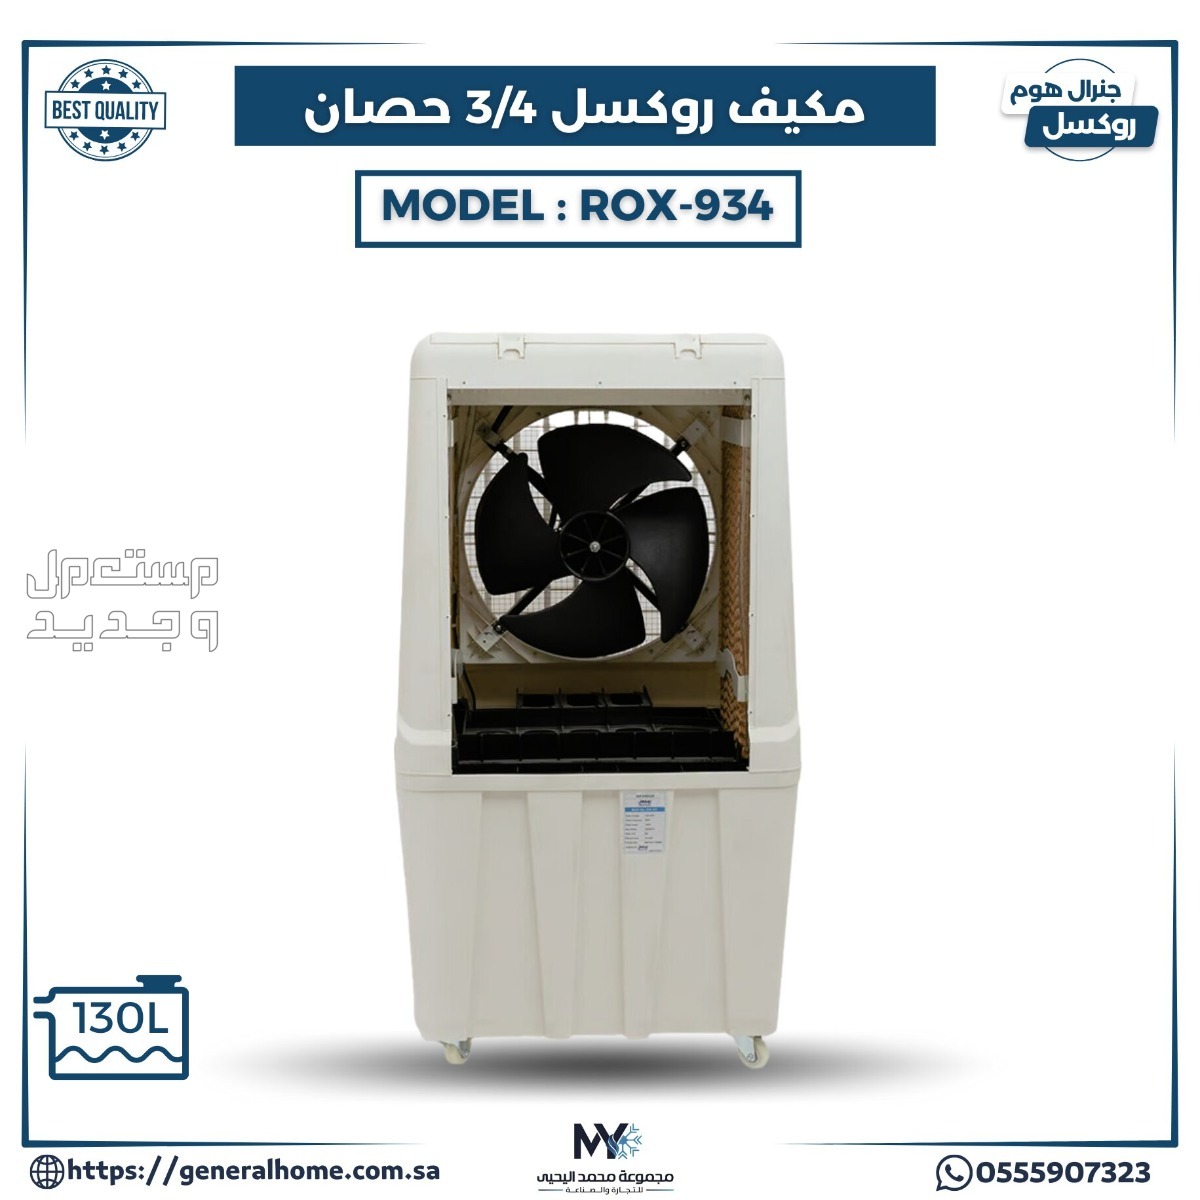 عروض اليحيى للمكيفات بالأنواع والمواصفات والصور والأسعار في الإمارات العربية المتحدة مكيف روكسل 3/4 حصان يدوي موديل ROX - 934